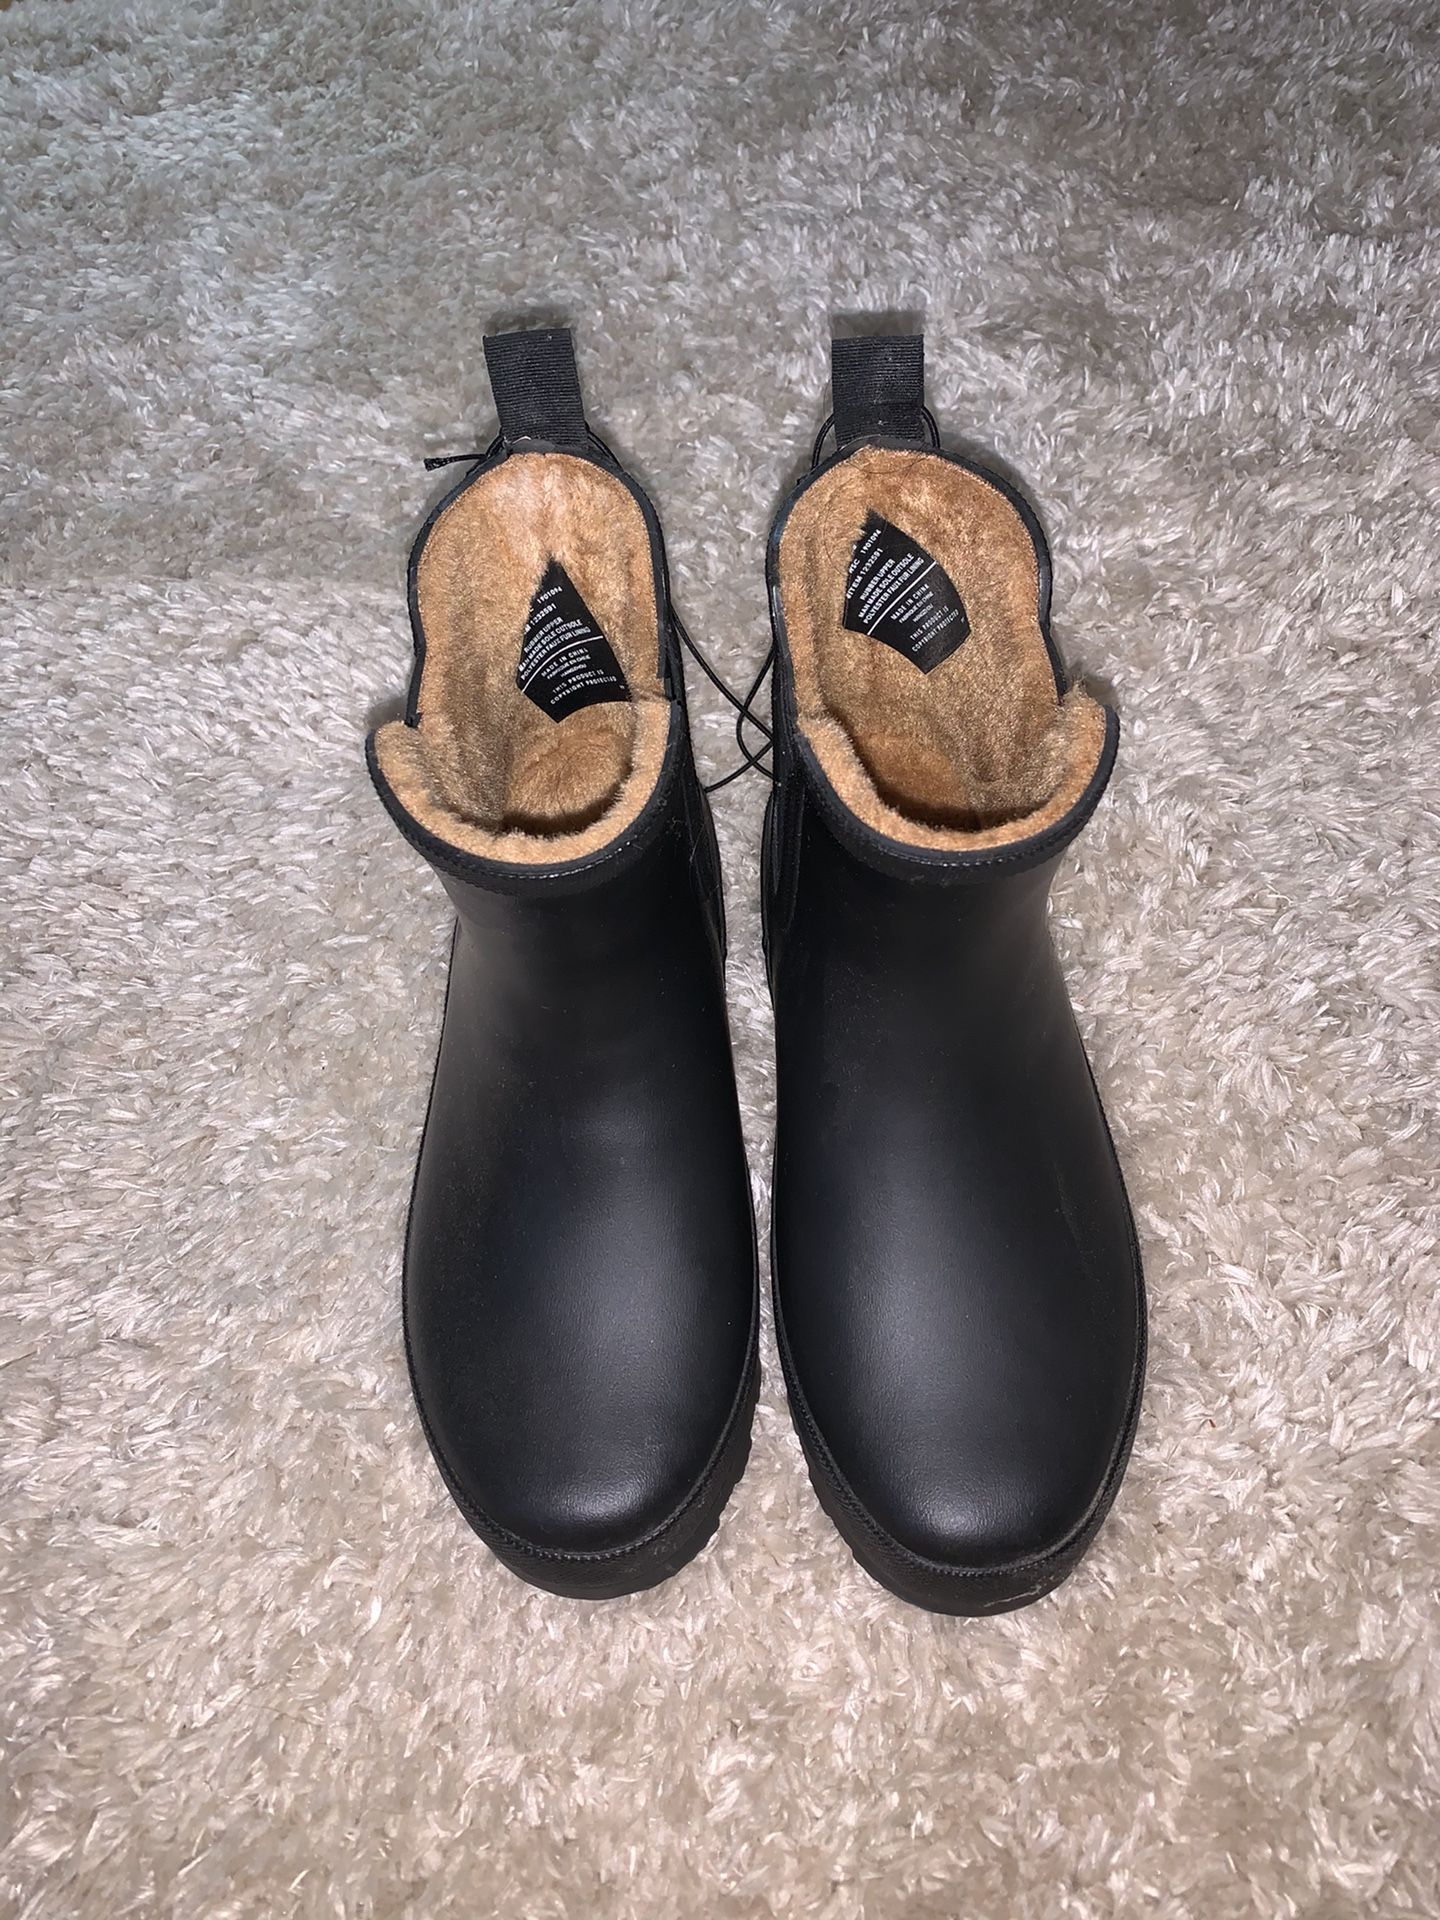 Black rain boots boots size 6